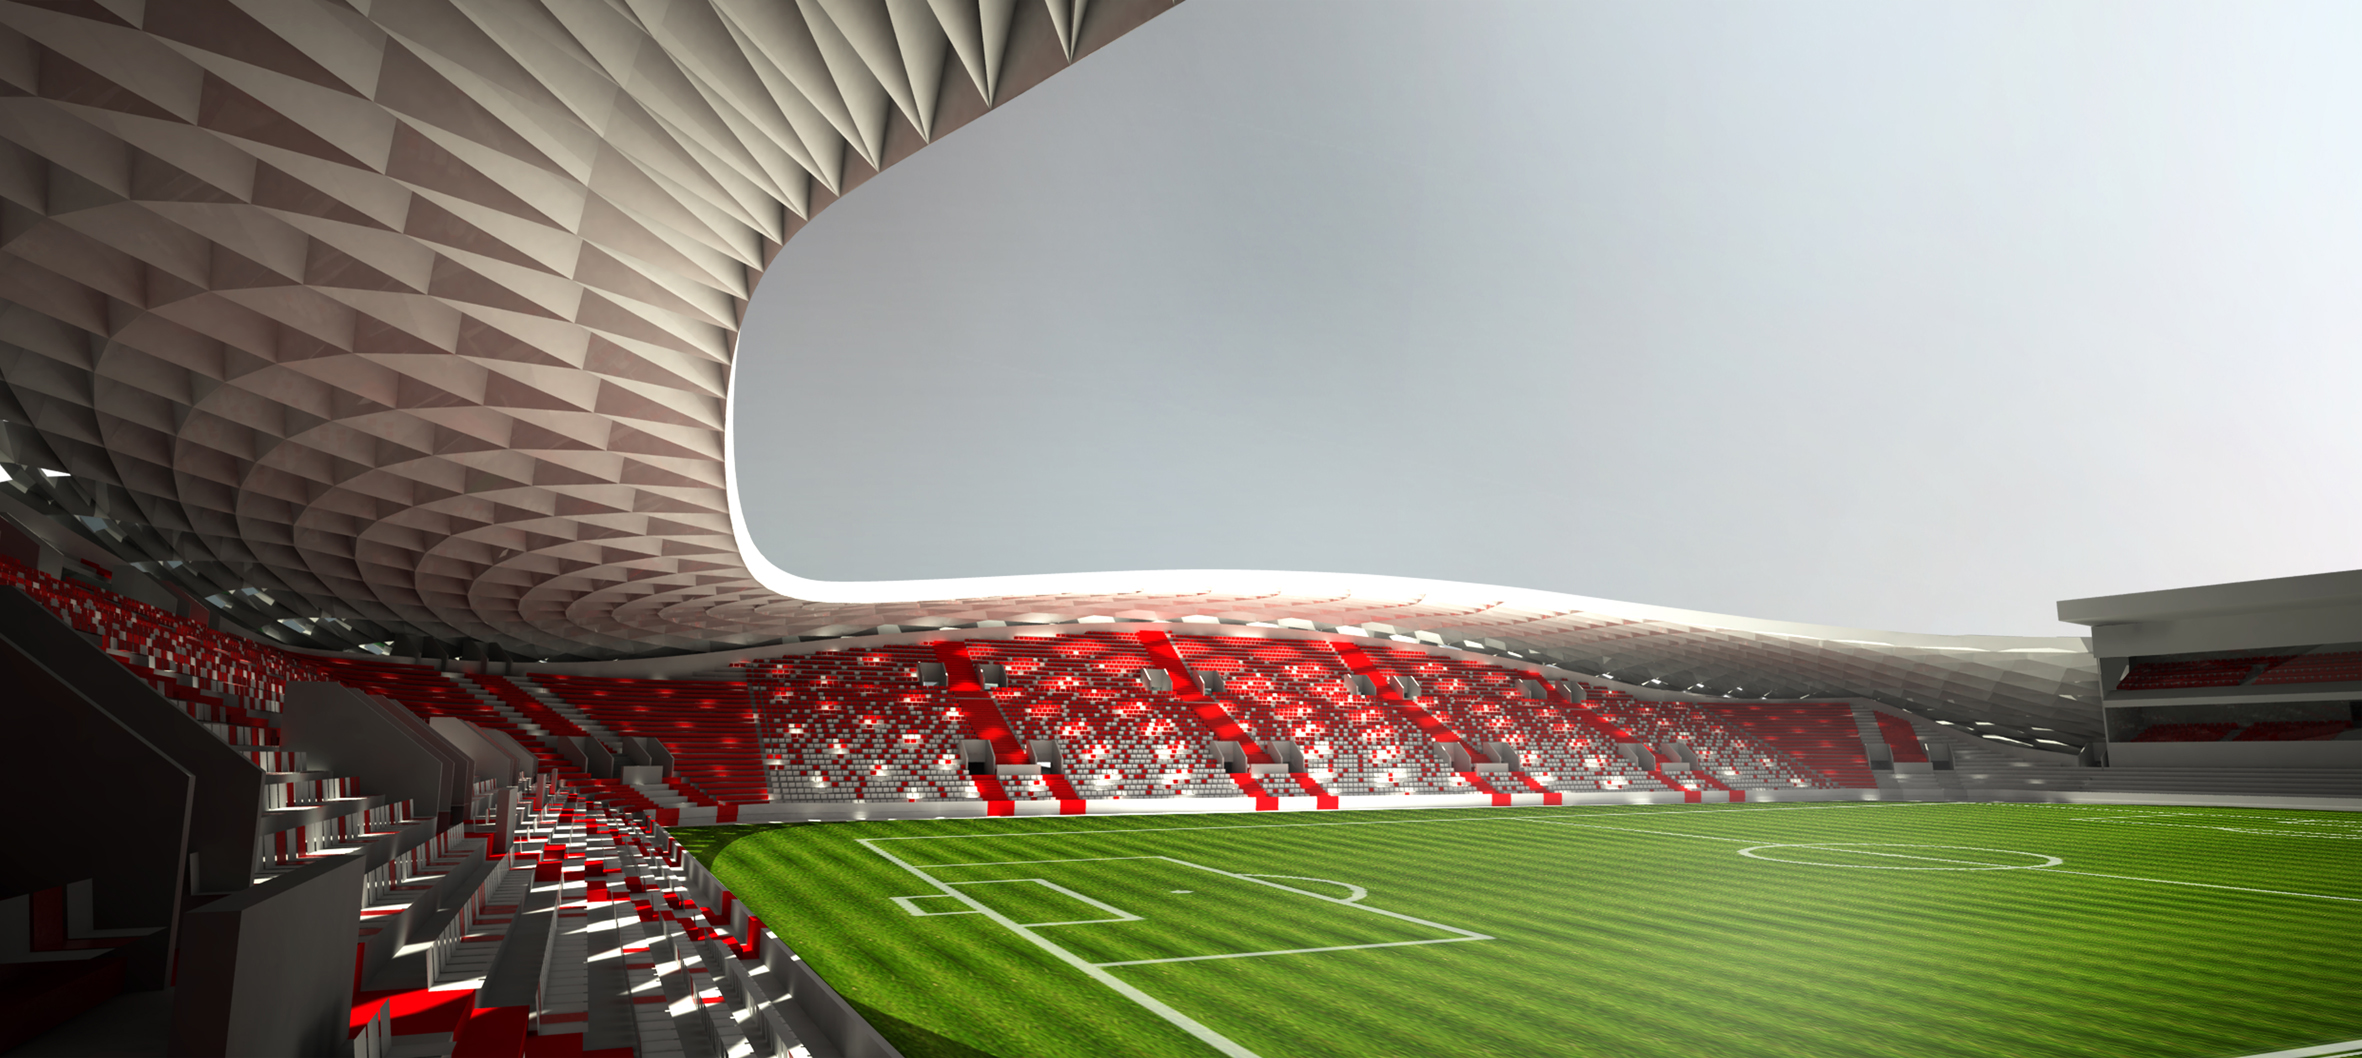 Wordt dit het nieuwe stadion van Antwerp? De Standaard